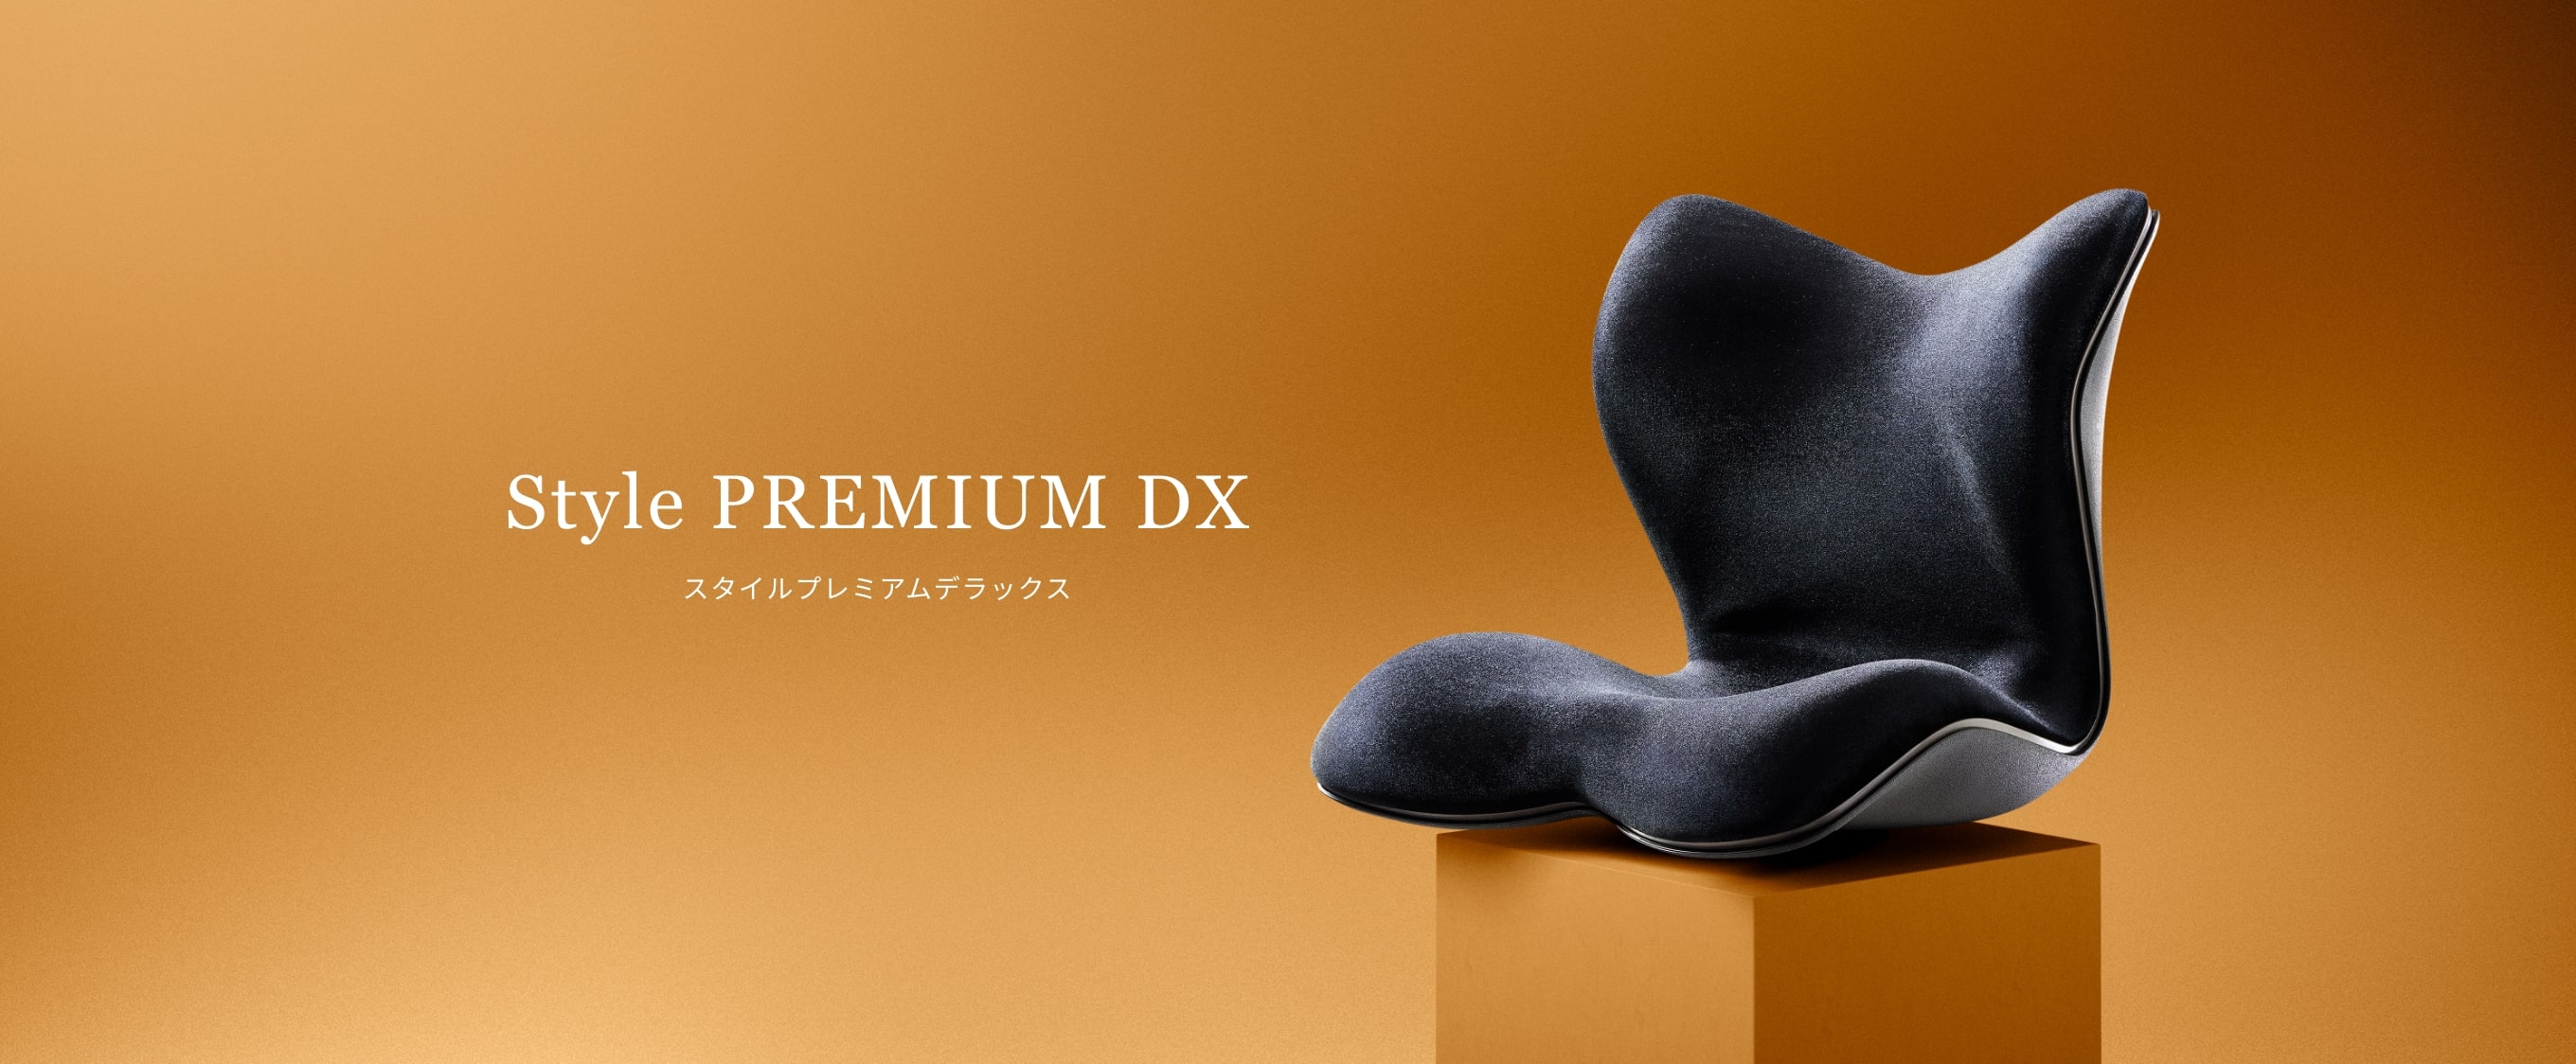 MTG スタイル プレミアム デラックス Style PREMIUM DX22000円で購入希望します